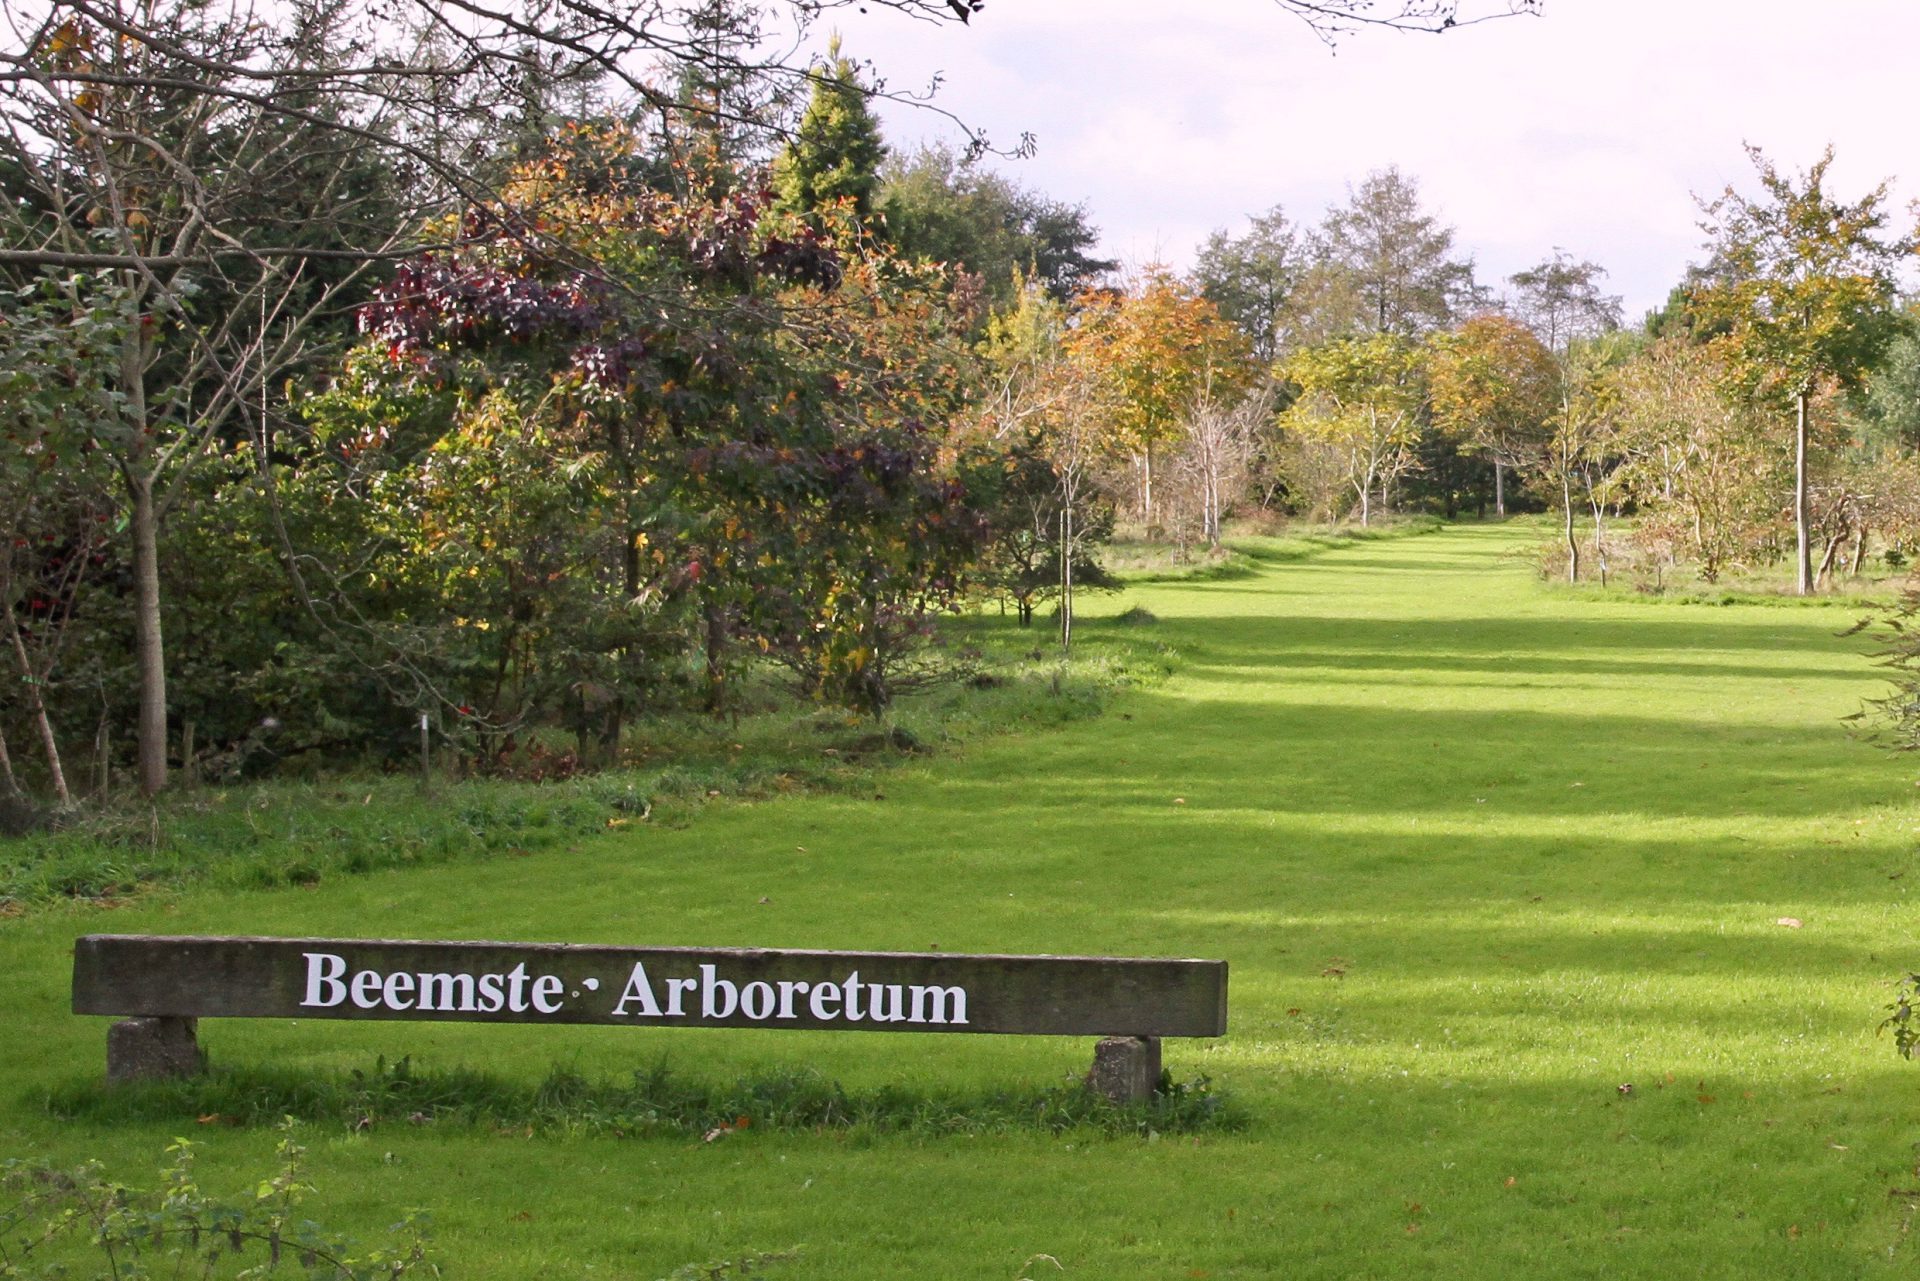 Beemster Arboretum